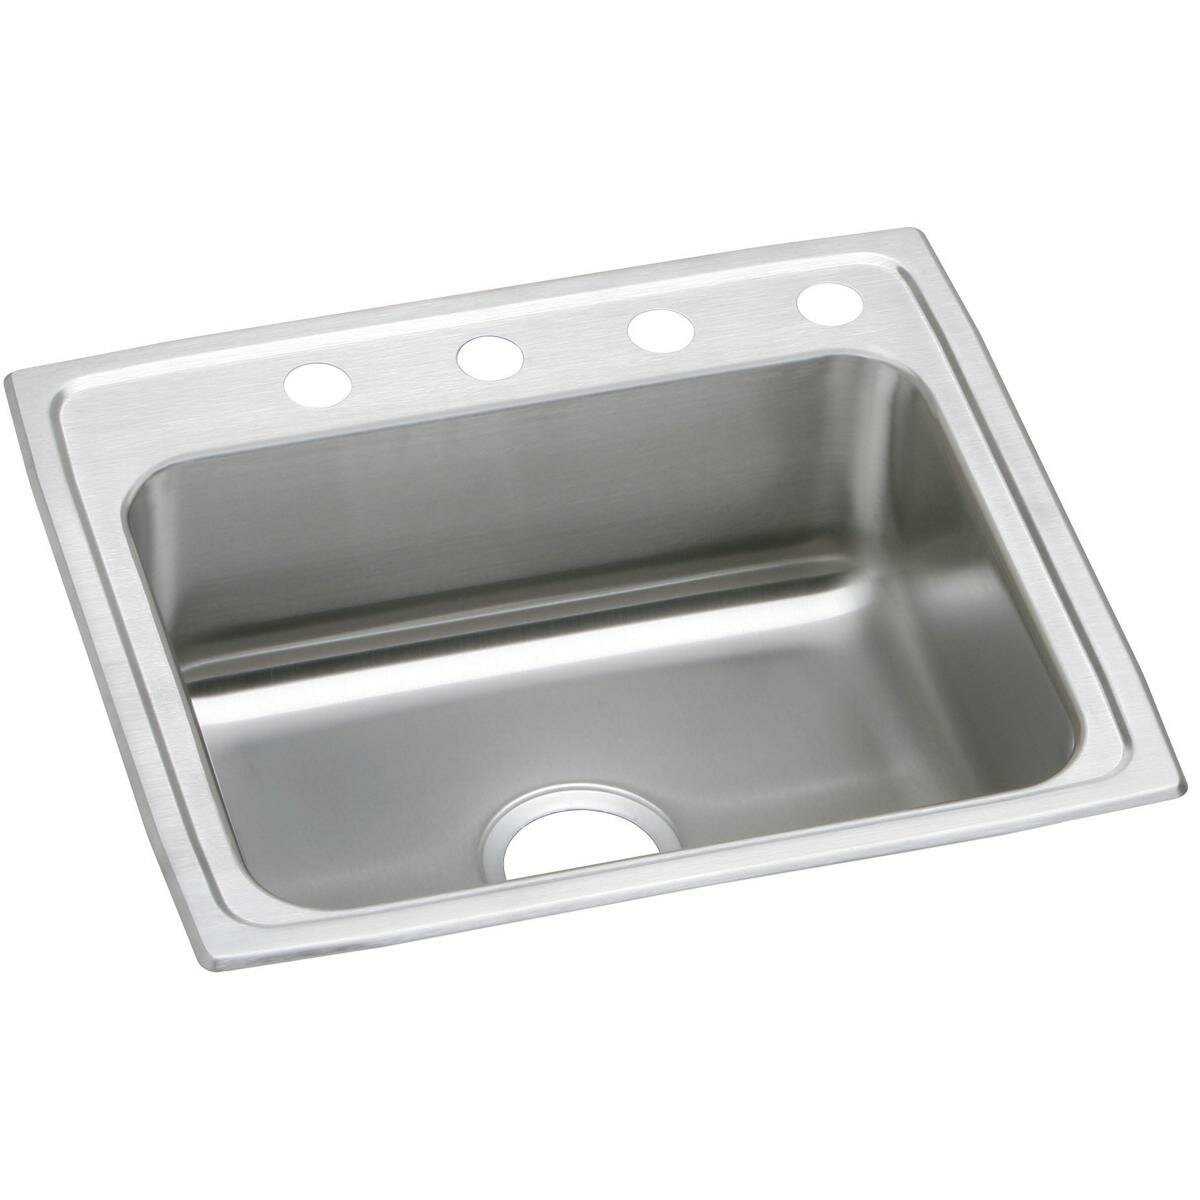 Elkay PSR22190 Sink Stainless steel